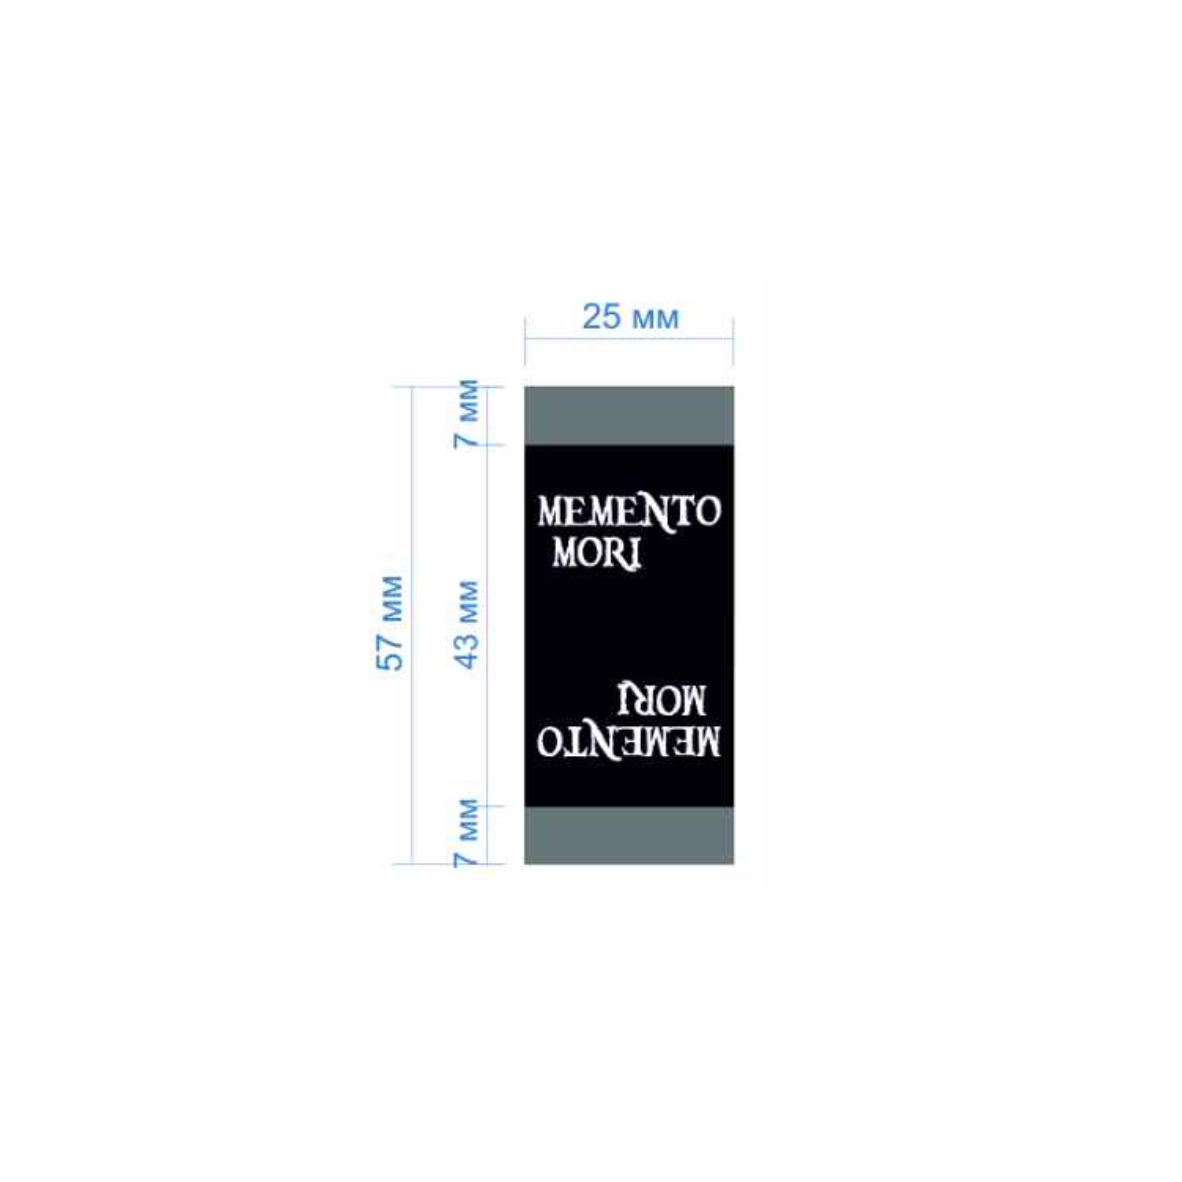 Этикетка тканевая Memento mori 2,5см черная и белый лого /флажок, 70 atki/, шт. Вышивка / этикетка тканевая